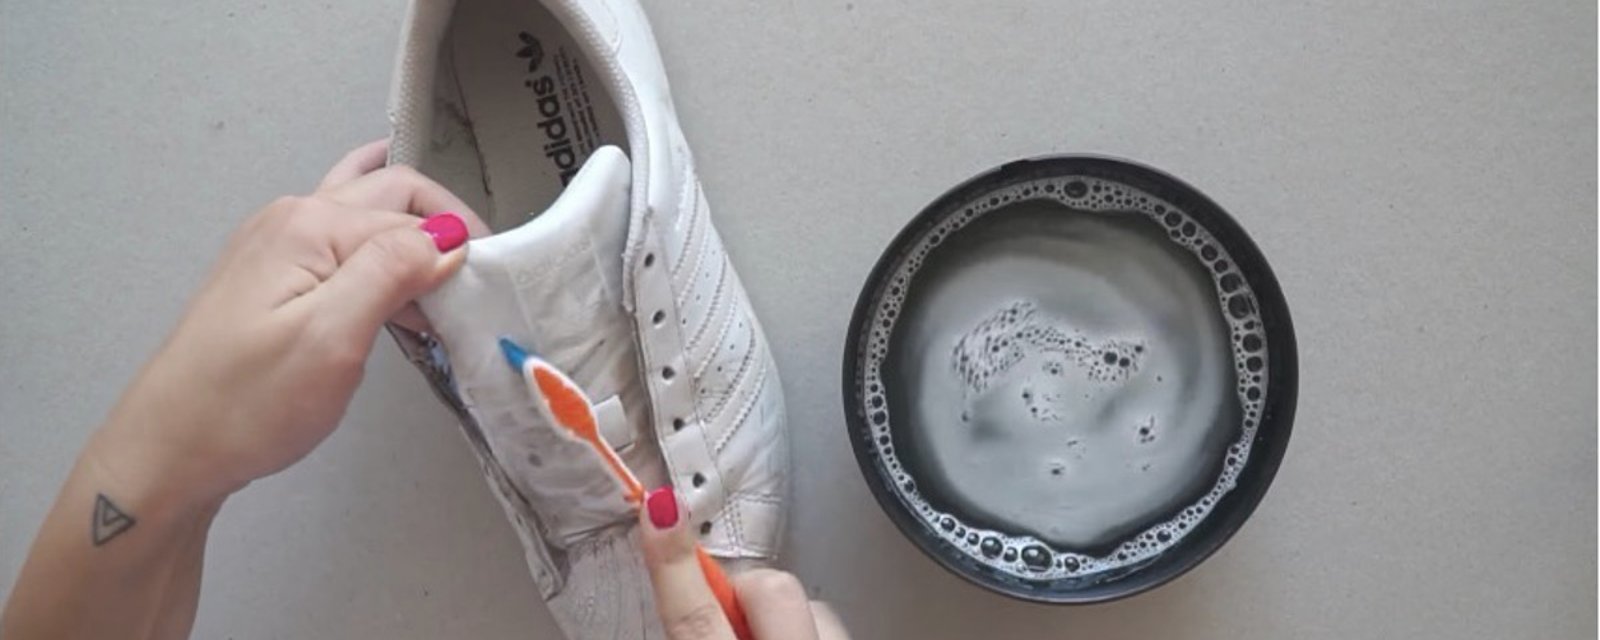 Une formule nettoyante super puissante pour rendre vos chaussures aussi blanches qu'à l'achat! 